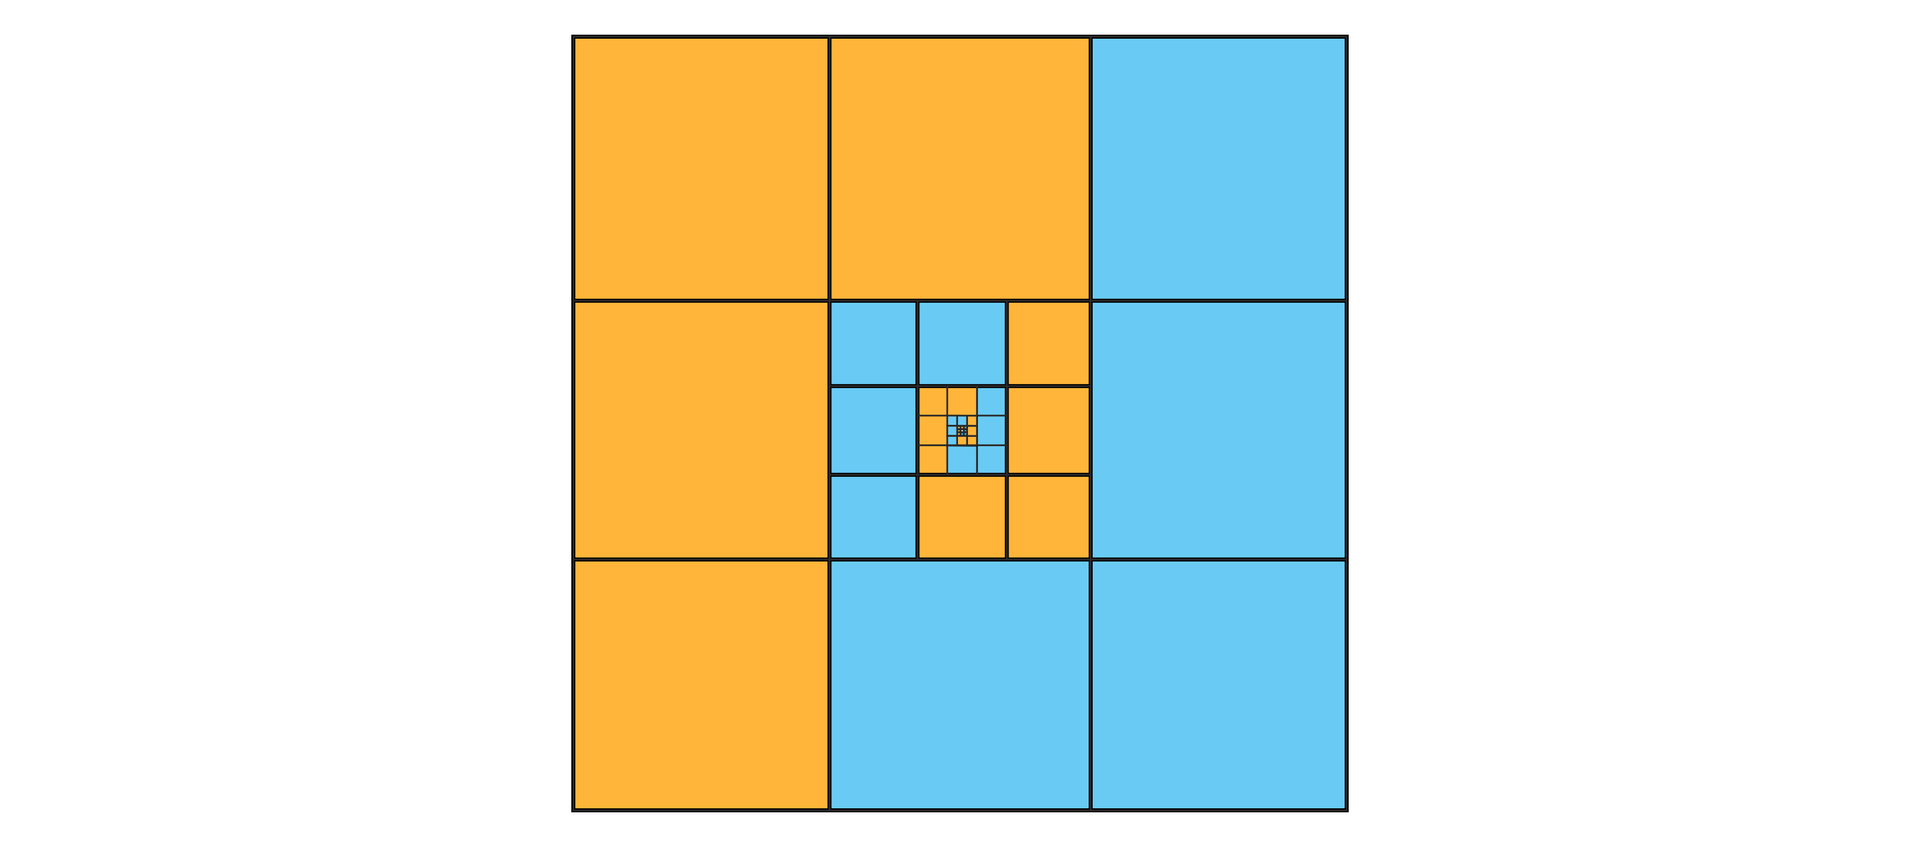 Diagram jest kwadratem podzielonym równo na dziewięć mniejszych kwadratów. Cztery kwadraty zaznaczono kolorem pomarańczowym. Są to trzy kwadraty znajdujące się po lewej stronie oraz jeden znajdujący się w górnej środkowej części. Niebieskim kolorem zaznaczono cztery mniejsze kwadraty: trzy znajdujące się po prawo i jeden leżący w środkowej dolnej części dużej figury. W samym środku dużego kwadratu znajduje się mniejszy kwadrat podzielony tak samo na dziewięć różnych mniejszych kwadratów. Podział jest bardzo podobny jak opisany wcześniej z tą różnicą, że tutaj użyto kolorów odwrotnie. Cztery kwadraty zaznaczono kolorem niebieskim. Są to trzy kwadraty znajdujące się po lewej stronie oraz jeden znajdujący się w górnej środkowej części. Pomarańczowym kolorem zaznaczono cztery mniejsze kwadraty: trzy znajdujące się po prawo i jeden leżący w środkowej dolnej części dużej figury. W samym środku dużego kwadratu znajduje się mniejszy kwadrat podzielony tak samo na dziewięć różnych mniejszych kwadratów. Tutaj podział jest taki sam, jak na początku, czyli cztery kwadraty zaznaczono kolorem pomarańczowym. Są to trzy kwadraty znajdujące się po lewej stronie oraz jeden znajdujący się w górnej środkowej części. Niebieskim kolorem zaznaczono cztery mniejsze kwadraty: trzy znajdujące się po prawo i jeden leżący w środkowej dolnej części dużej figury. W samym środku dużego kwadratu znajduje się mniejszy kwadrat podzielony tak samo na dziewięć różnych mniejszych kwadratów i tak dalej. Zaznaczone kwadraty układają się w spiralę.